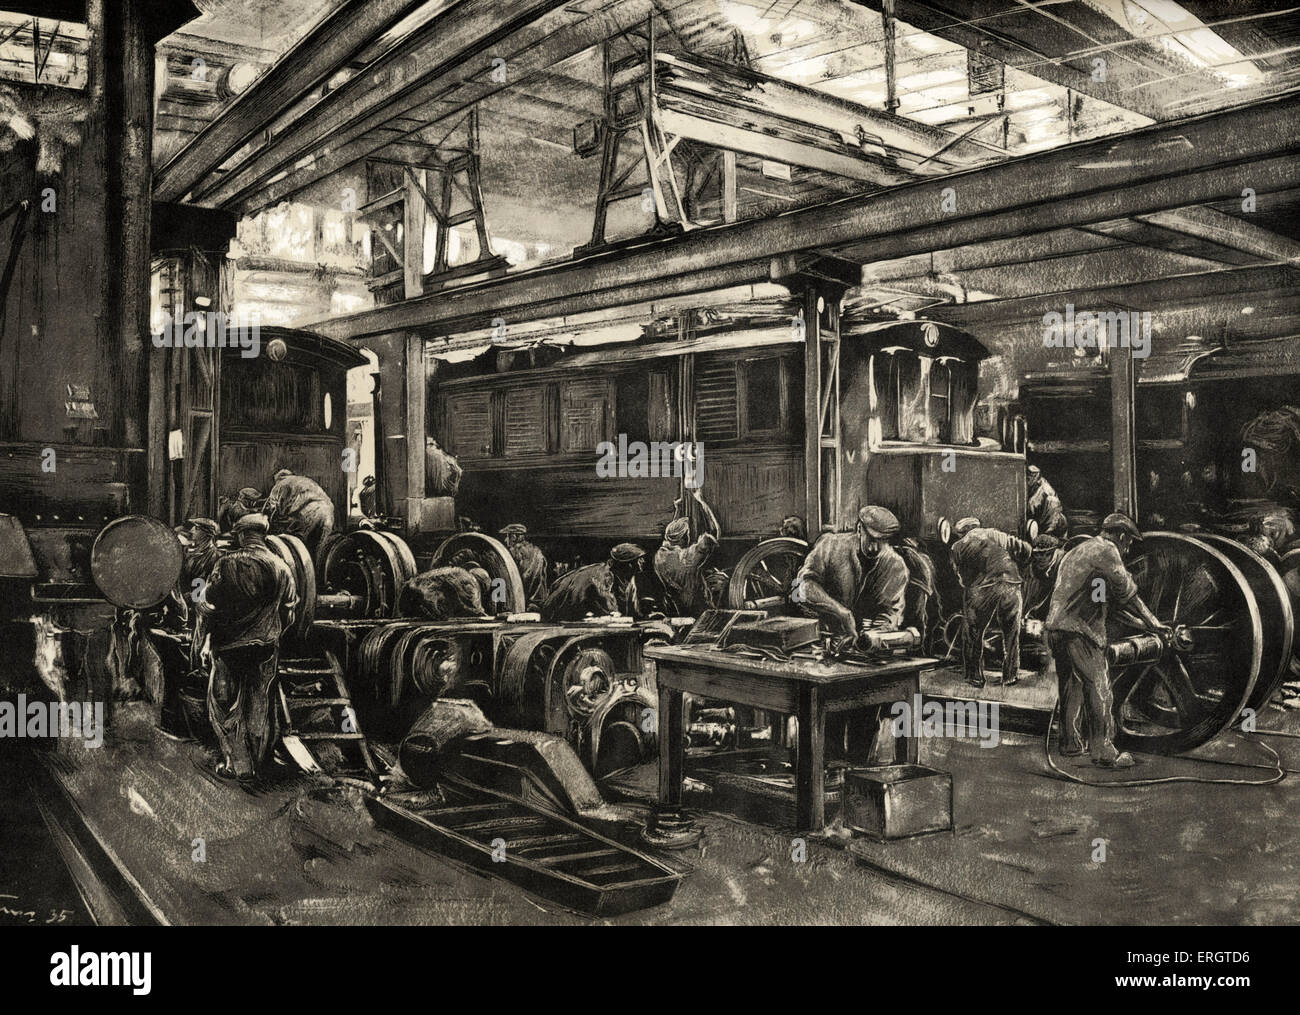 Le ferrovie tedesche - Reichsbahn officina di riparazione per locomotive elettriche a Monaco di Baviera. Dipinto di Rudolf Lipus, 1935. Nazionale socialista Foto Stock